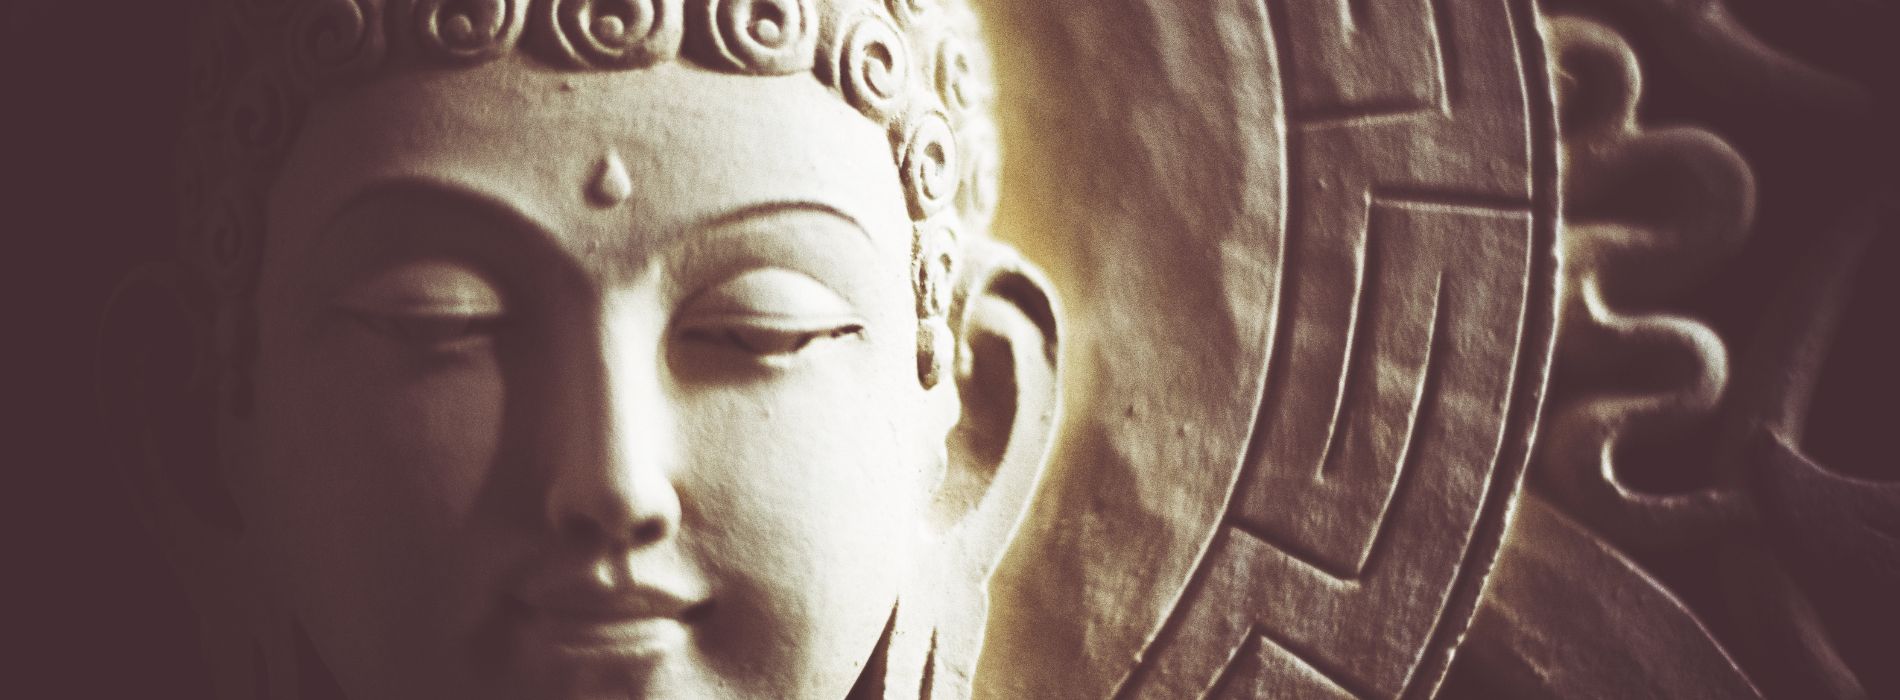 Qui est bouddha pour les bouddhistes ?